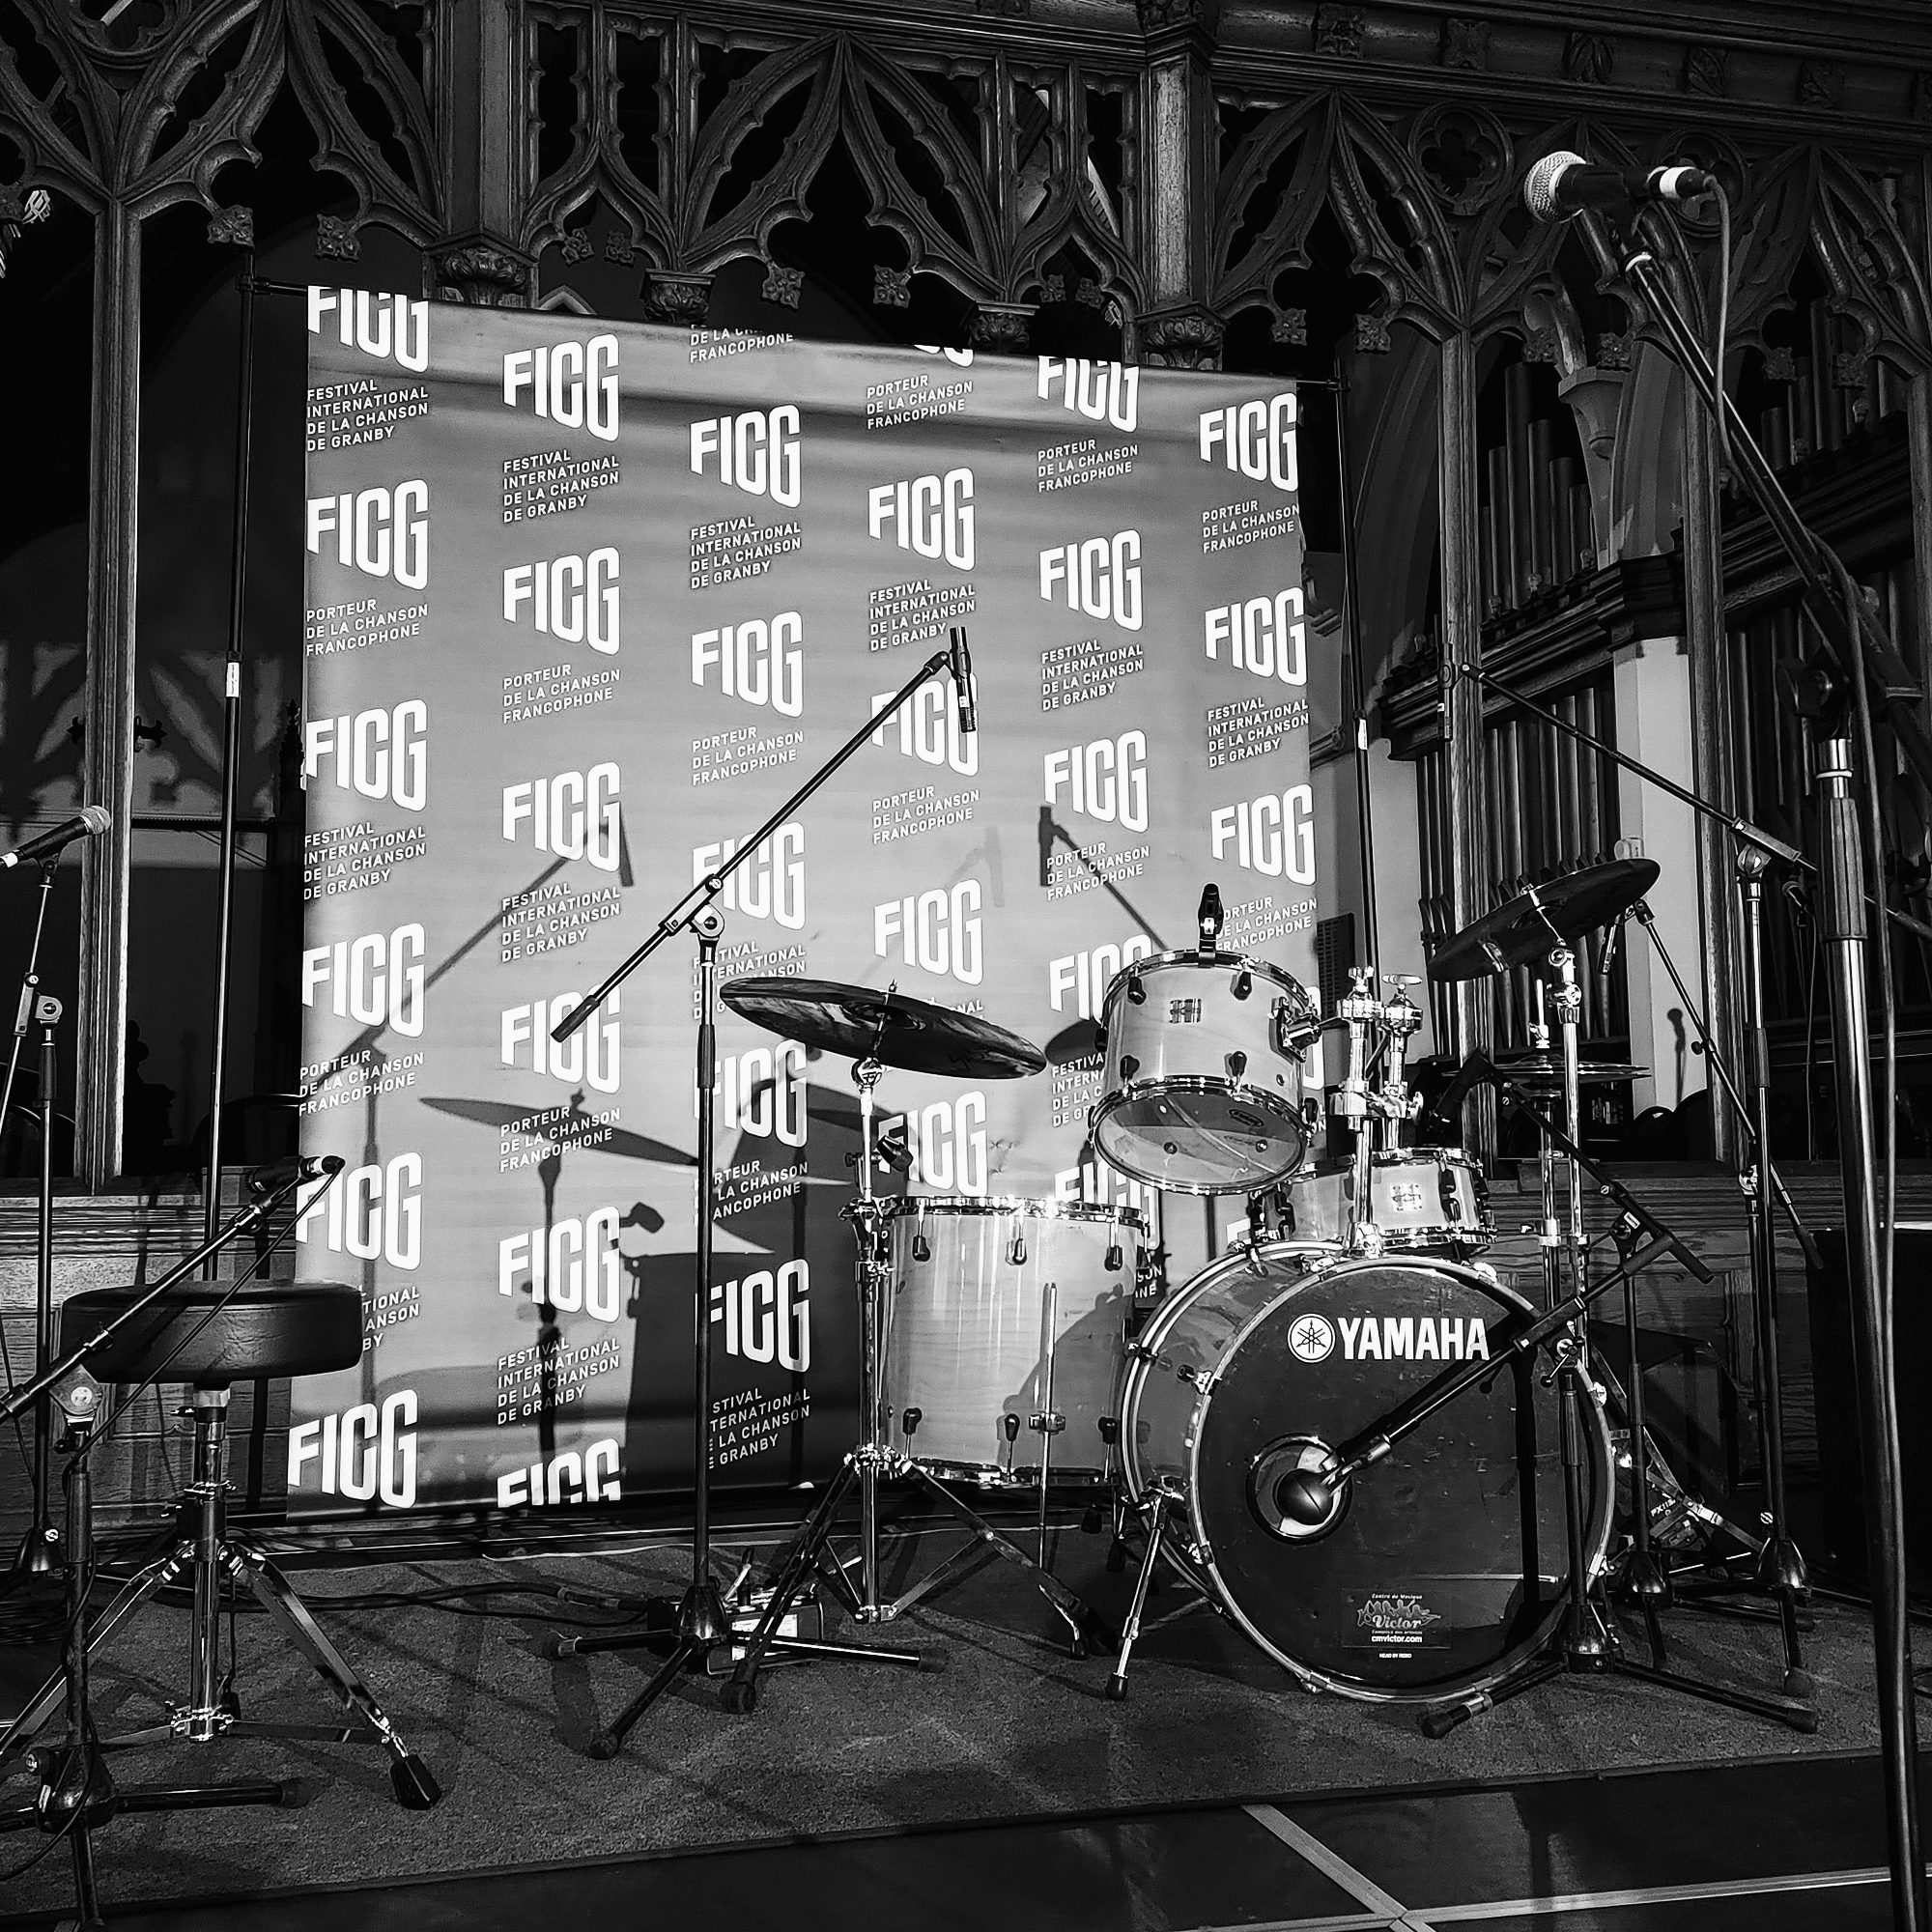 Une photo en noir et blanc d'une batterie sur scène, comprenant une grosse caisse Yamaha et d'autres instruments de percussion. Plusieurs microphones se trouvent autour. La toile de fond indique « FIGG » à plusieurs reprises. L’arrière-plan présente des détails en bois ornés.